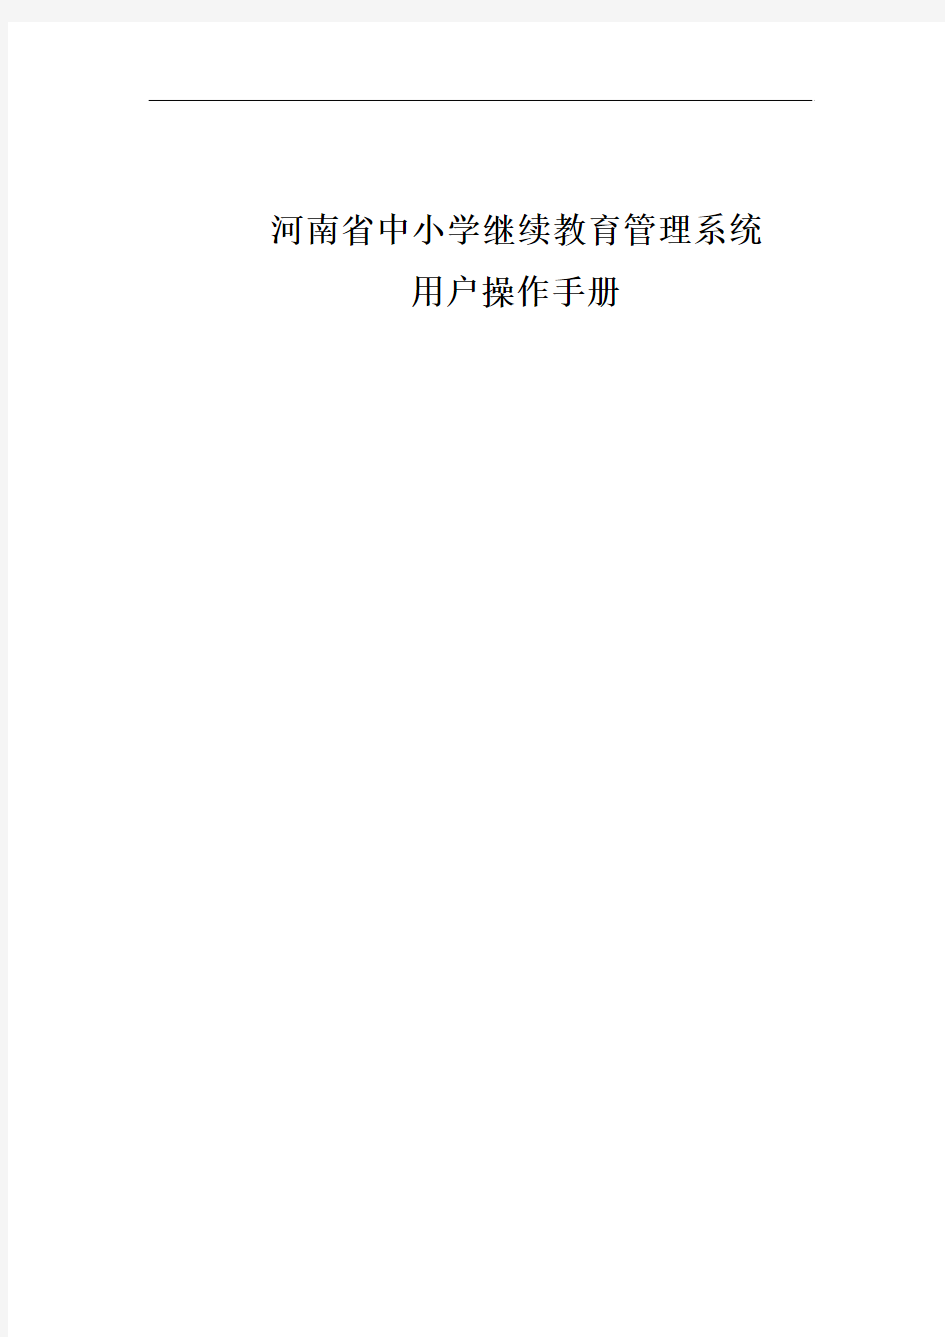 河南省中小学继续教育管理系统用户使用手册